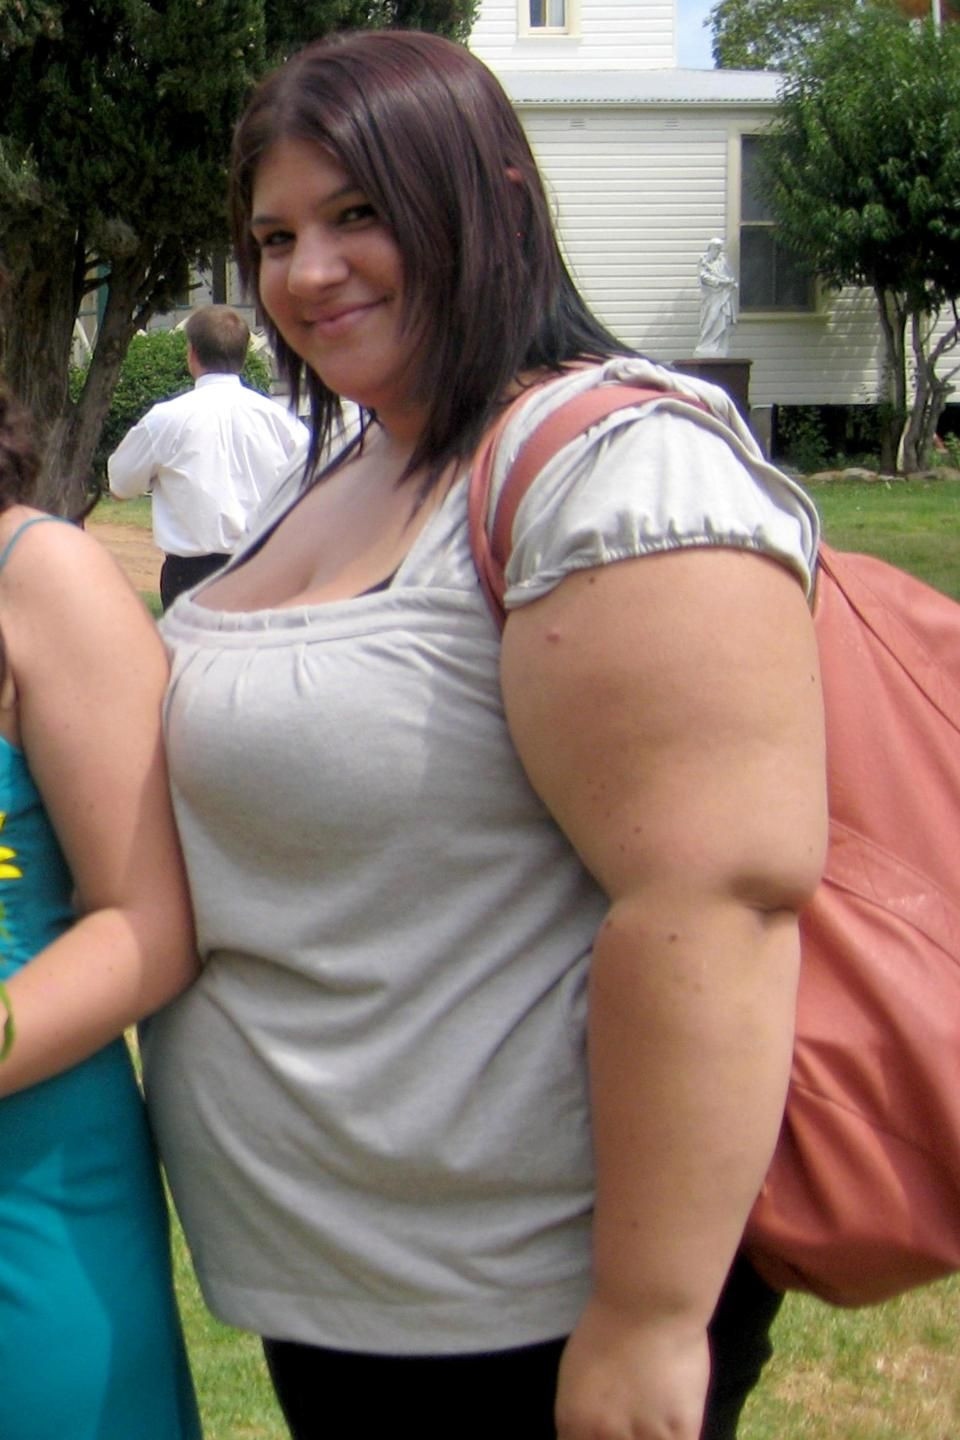 Obez kadın yeni kilosuyla şoke etti! İşte diyet listesi - Resim: 3